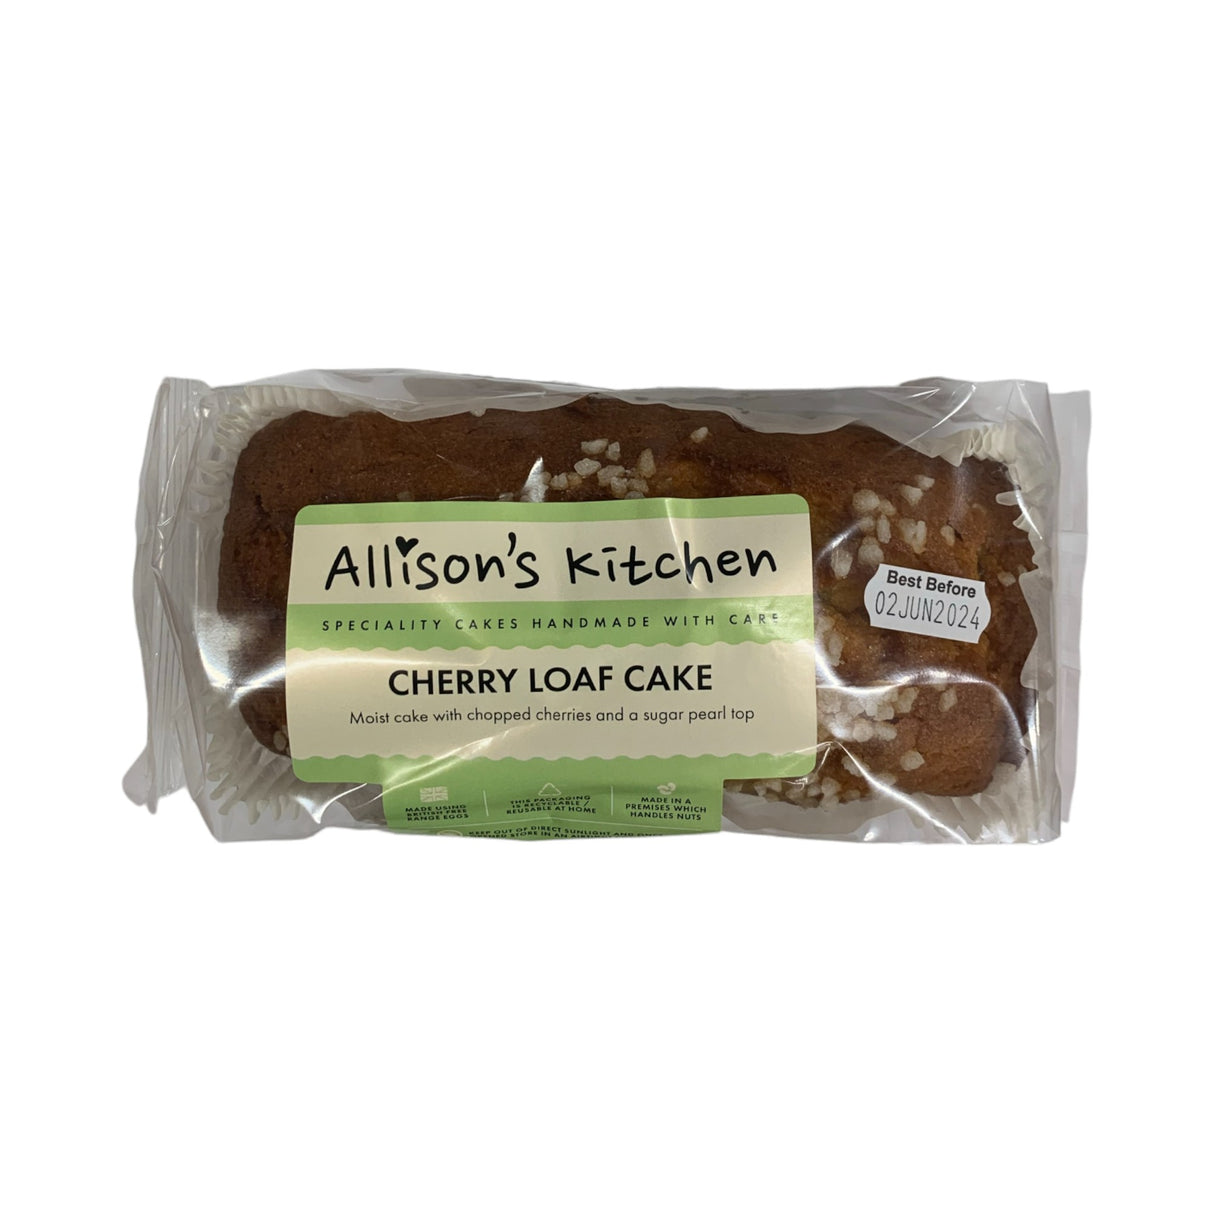 Allison's Kitchen Cherry Loaf Cake